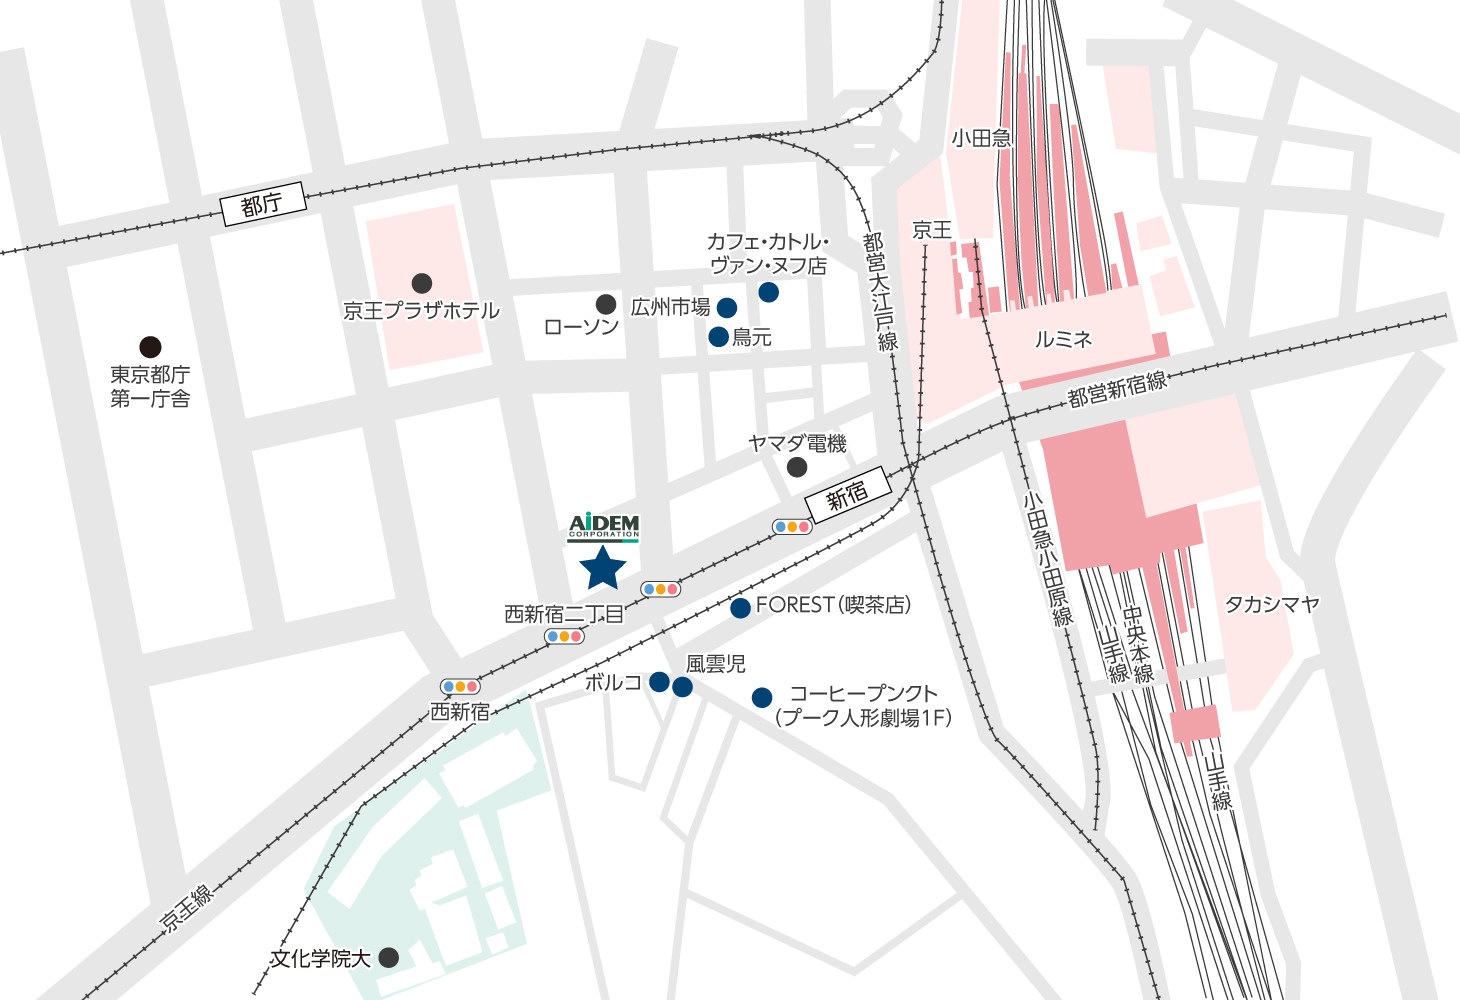 東京本社周辺の飲食店マップ